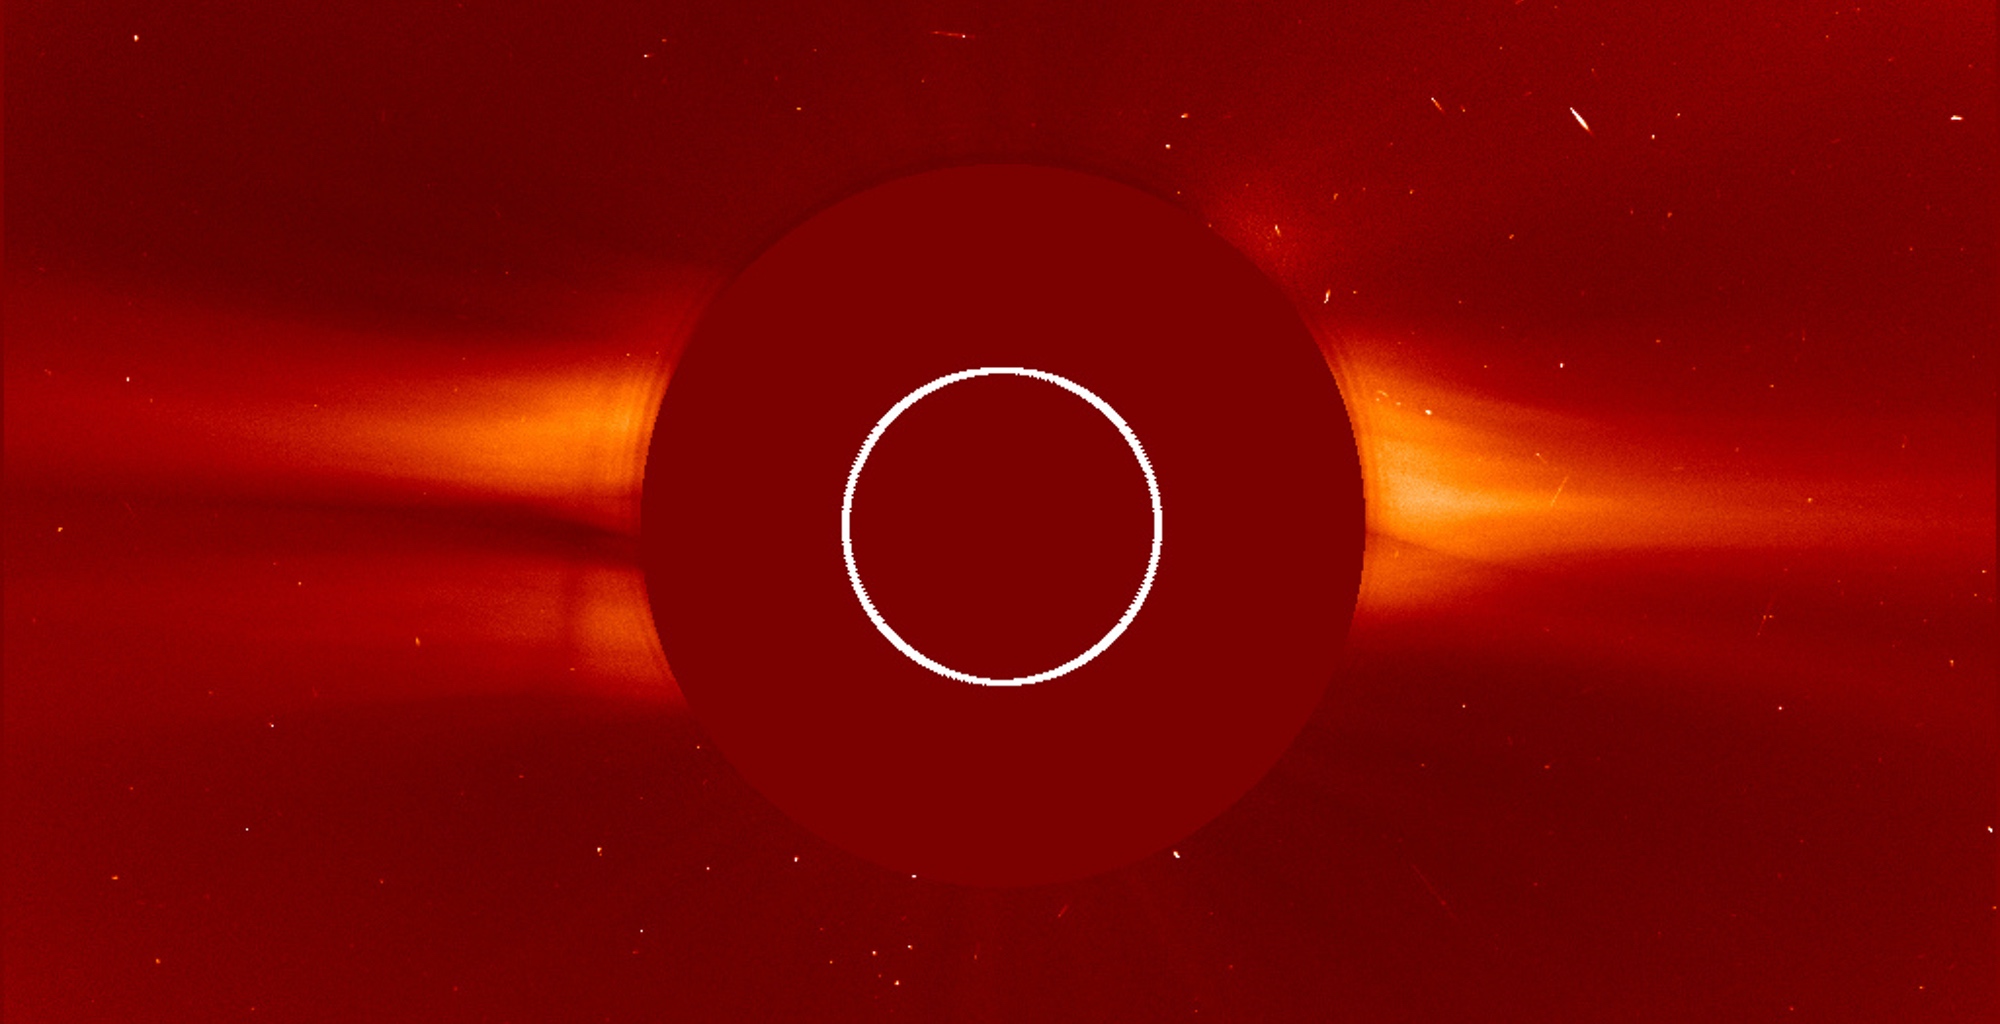 Le Soleil est au centre masqué par le coronographe Lasco C2 du satellite Soho. Image du 14 août 2020. On peut voir le vent solaire dépasser du disque. Le cercle blanc délimite la taille du Soleil. La Chine s'intéresse elle aussi à l'étude du Soleil, notamment dans l'idée d'en savoir plus sur la météo spatiale. © Nasa, ESA, Soho